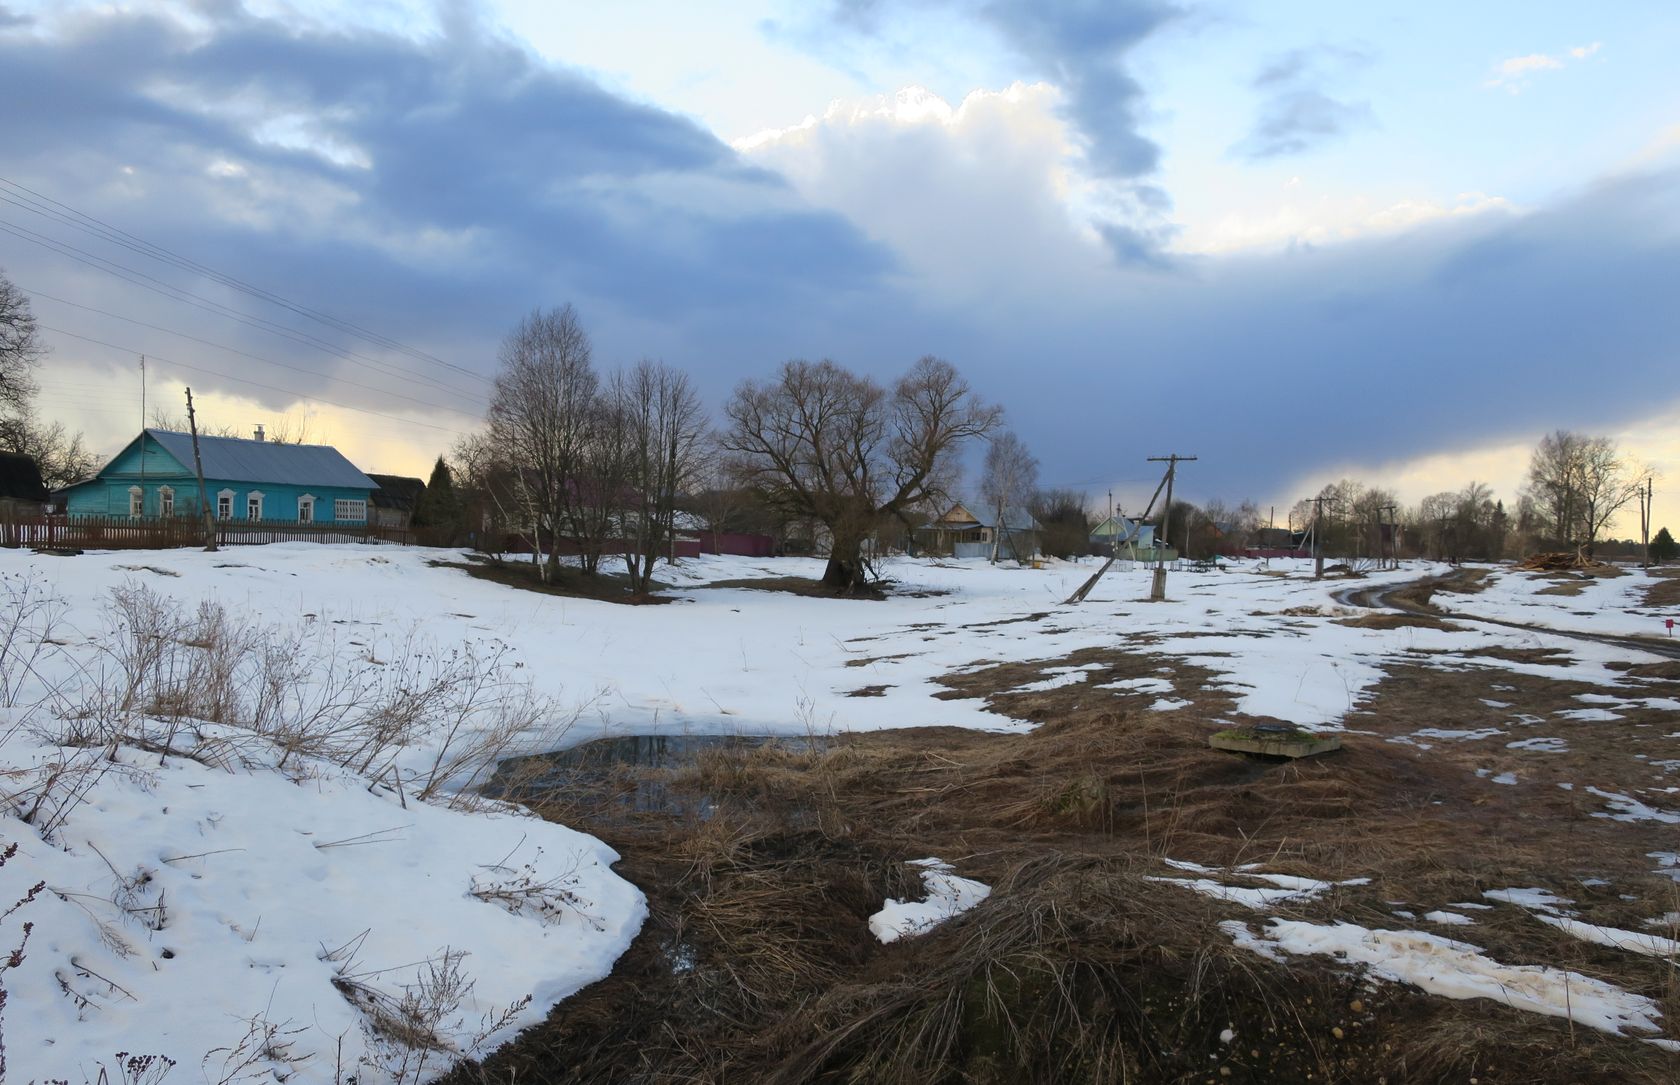 Ерденево, image of landscape/habitat.